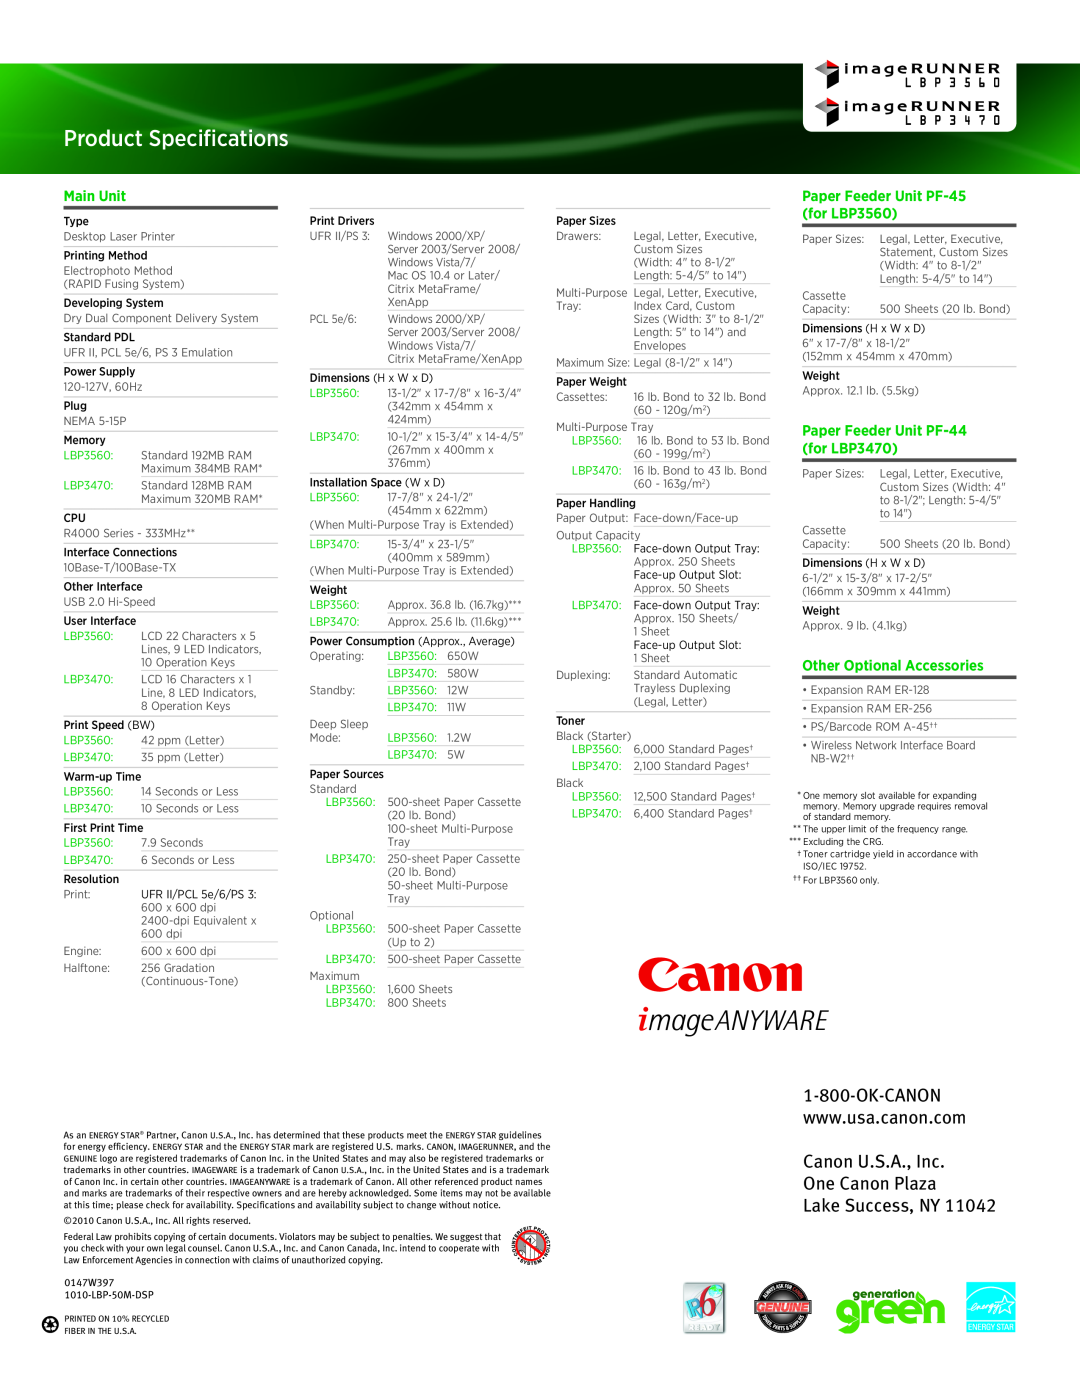 Canon LBP5975 Paper Feeder Unit PF-45 for LBP3560, Paper Feeder Unit PF-44 for LBP3470, Product Specifications, Main Unit 